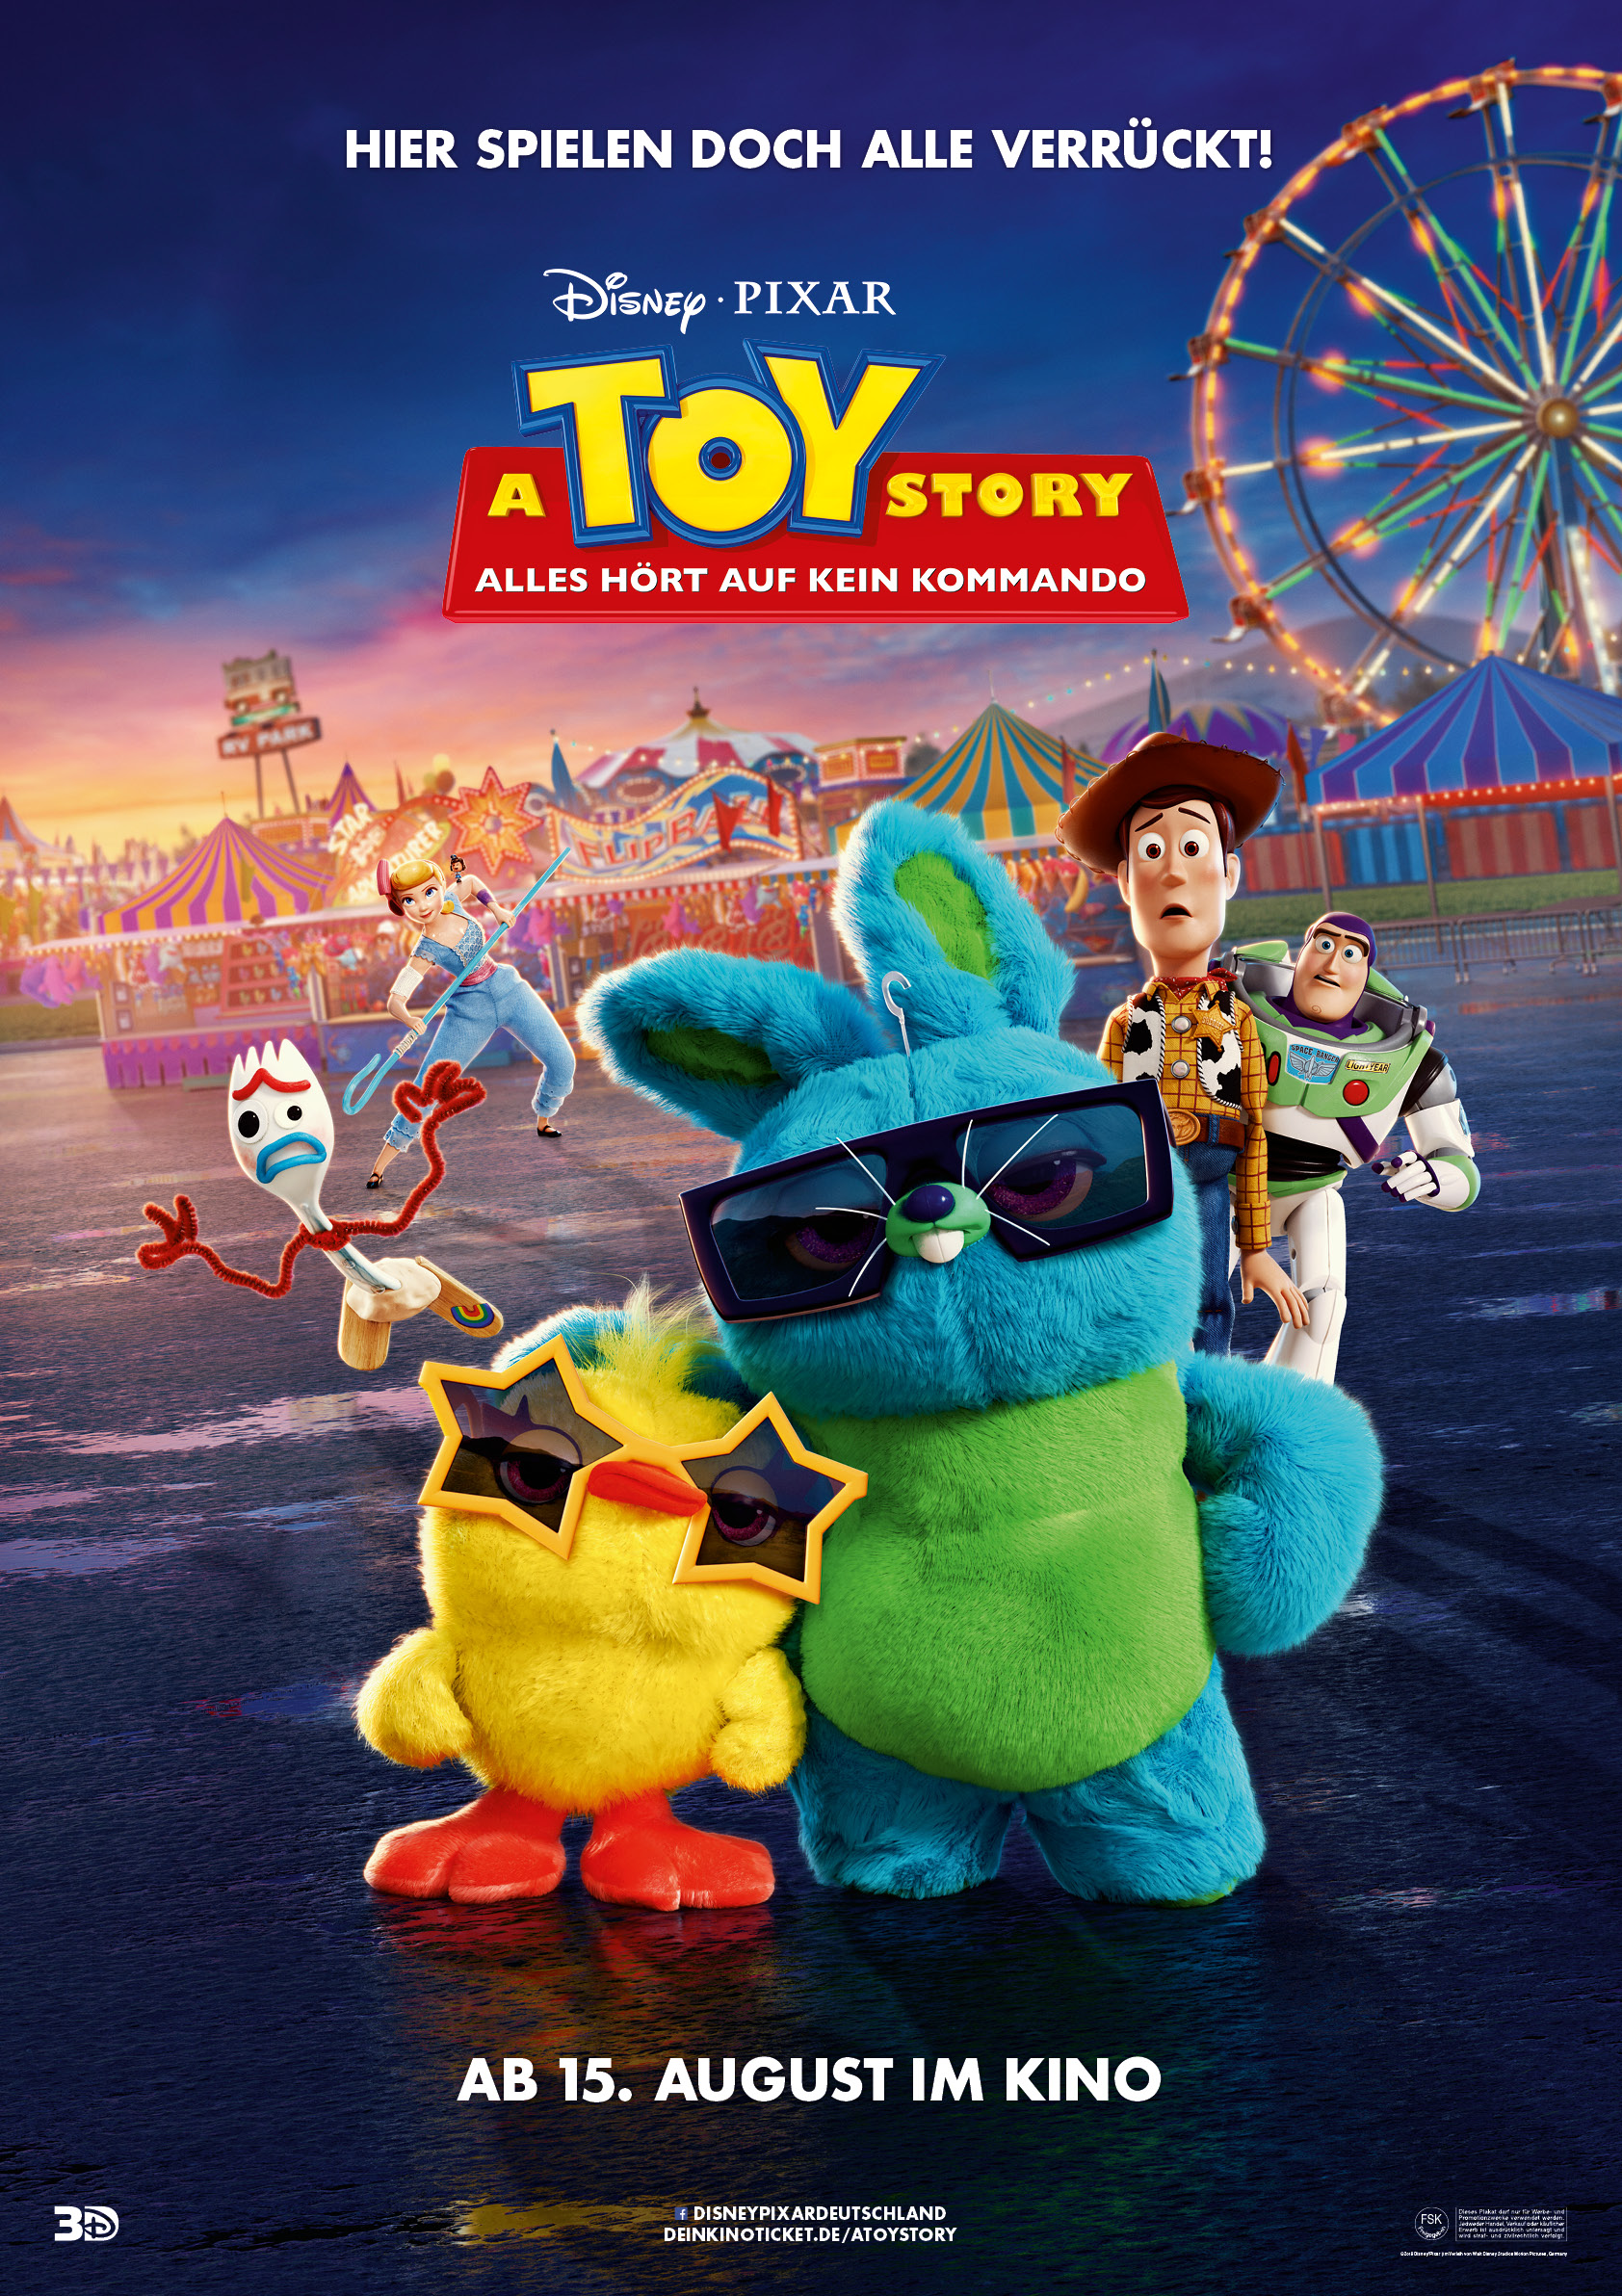 A Toy Story Alles Hort Auf Kein Kommando Film 2019